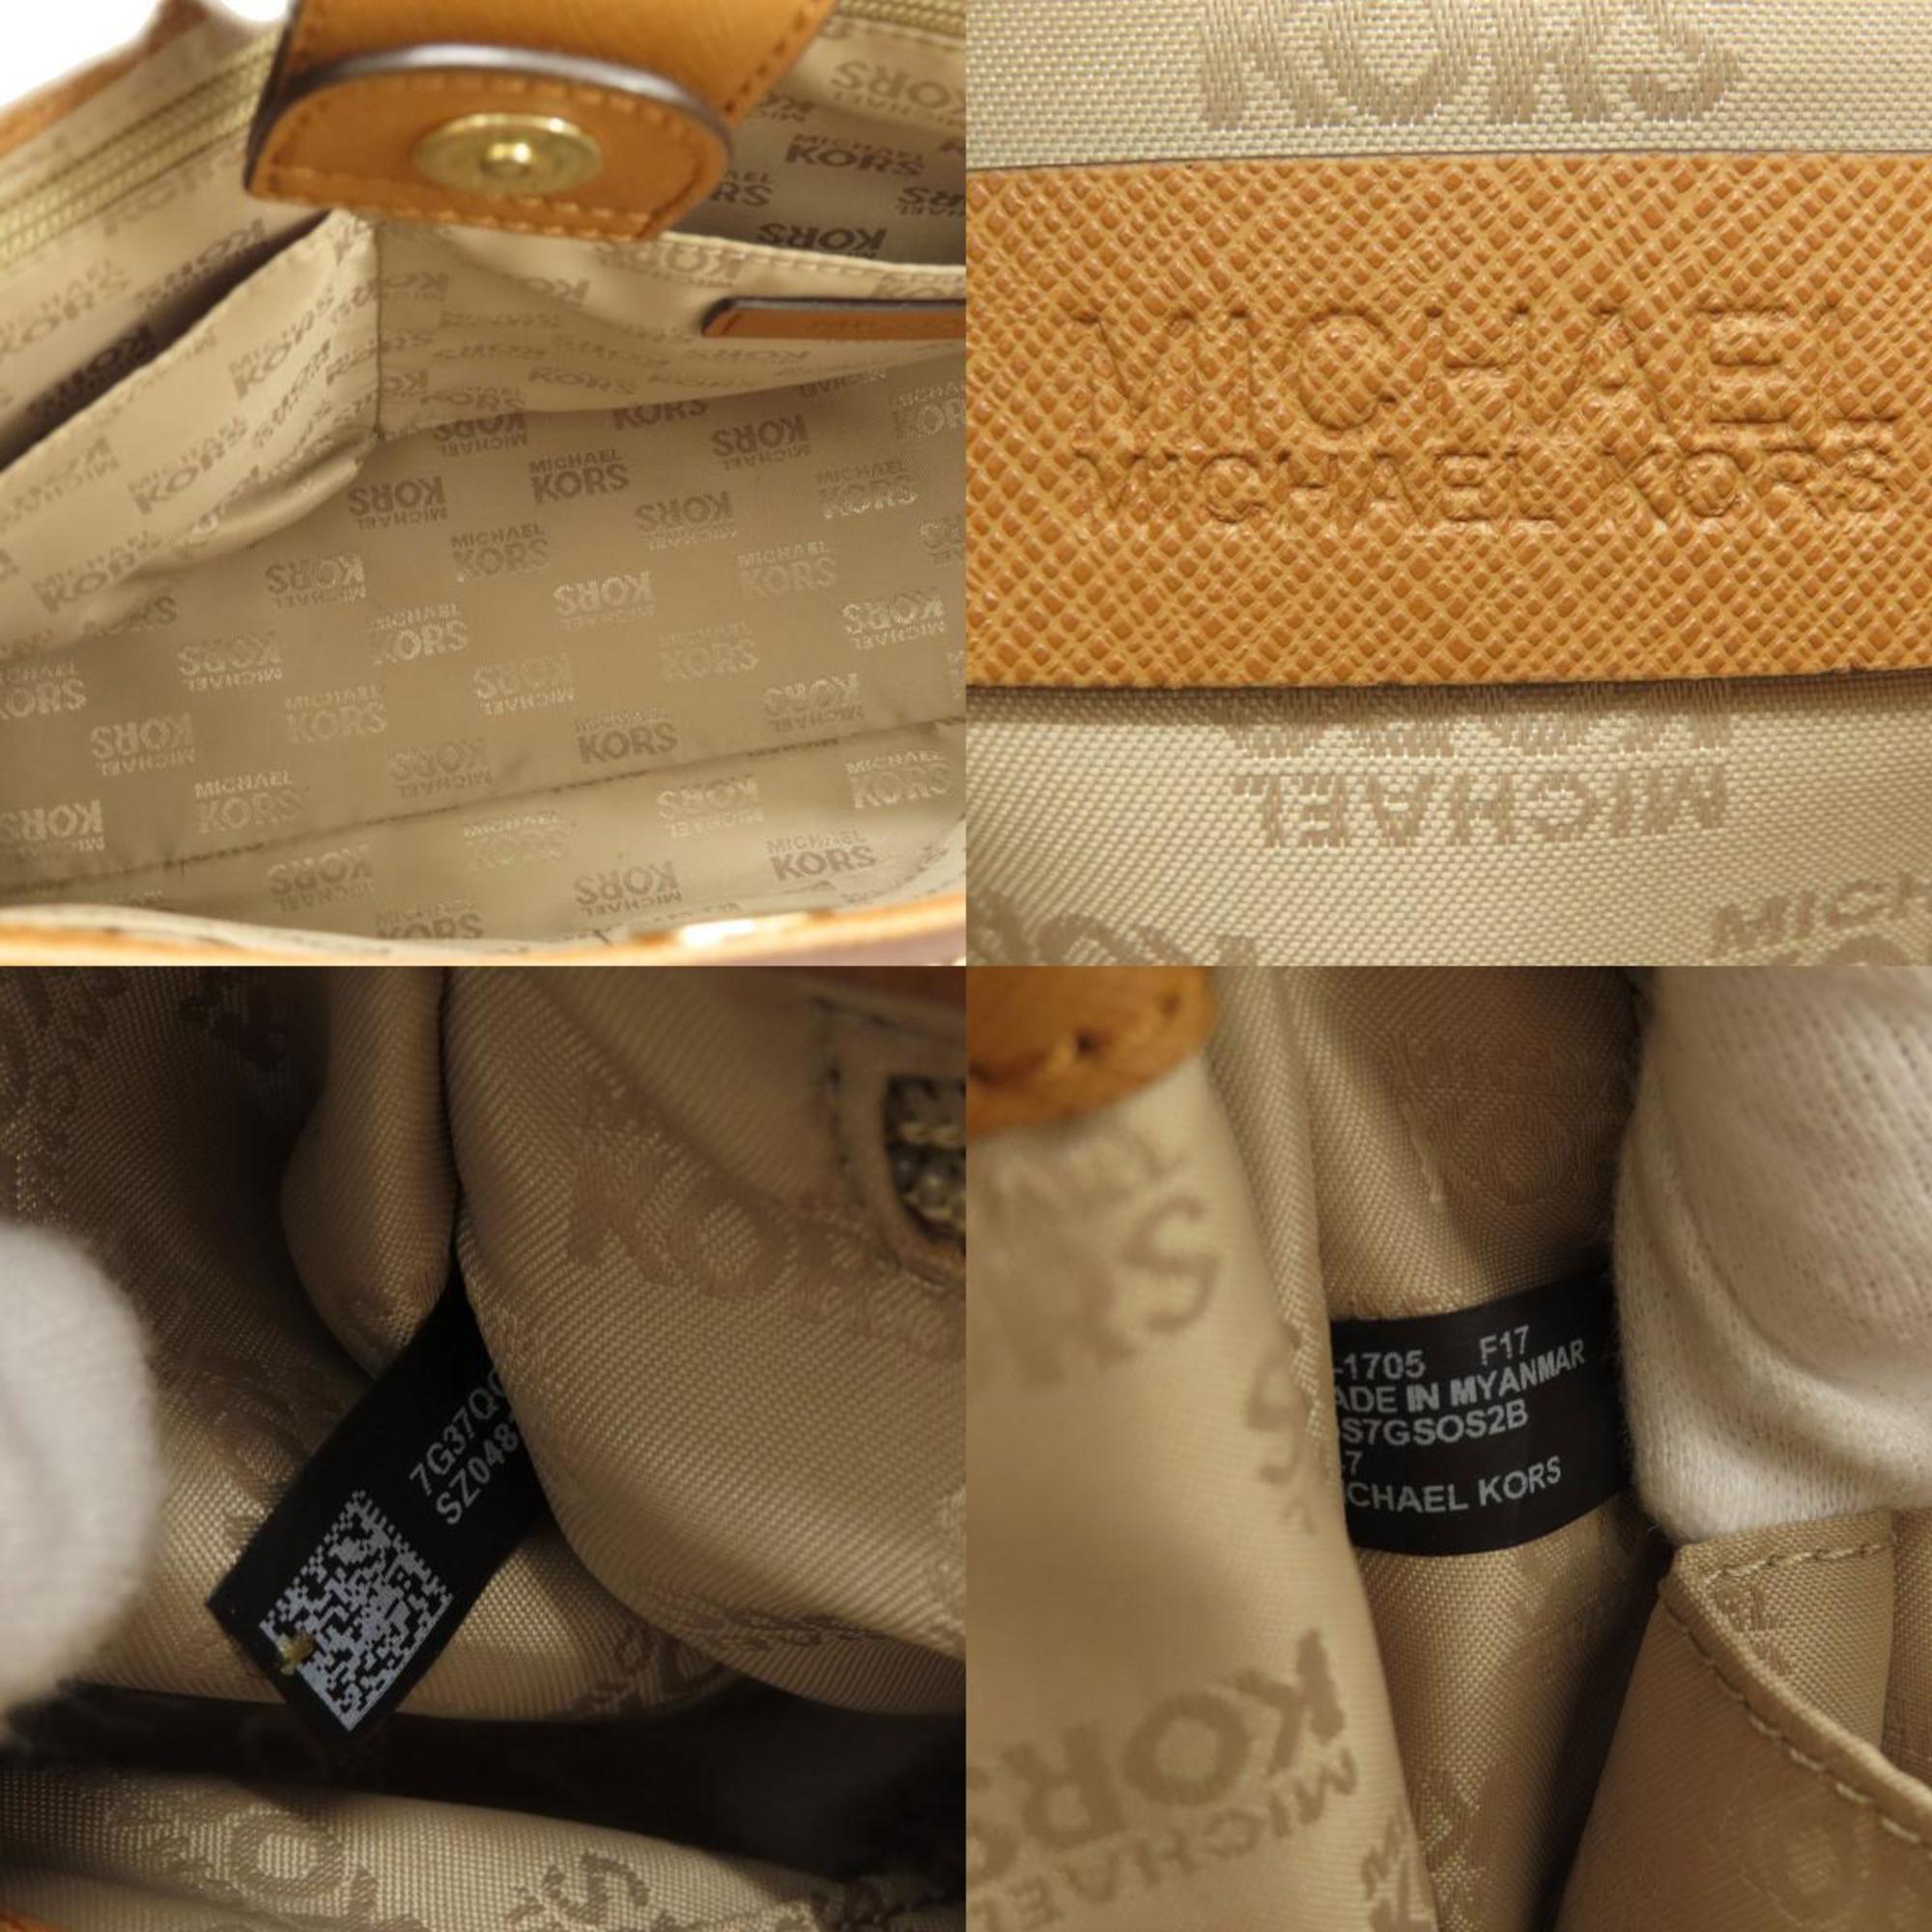 Michael Kors motif tote bag for women